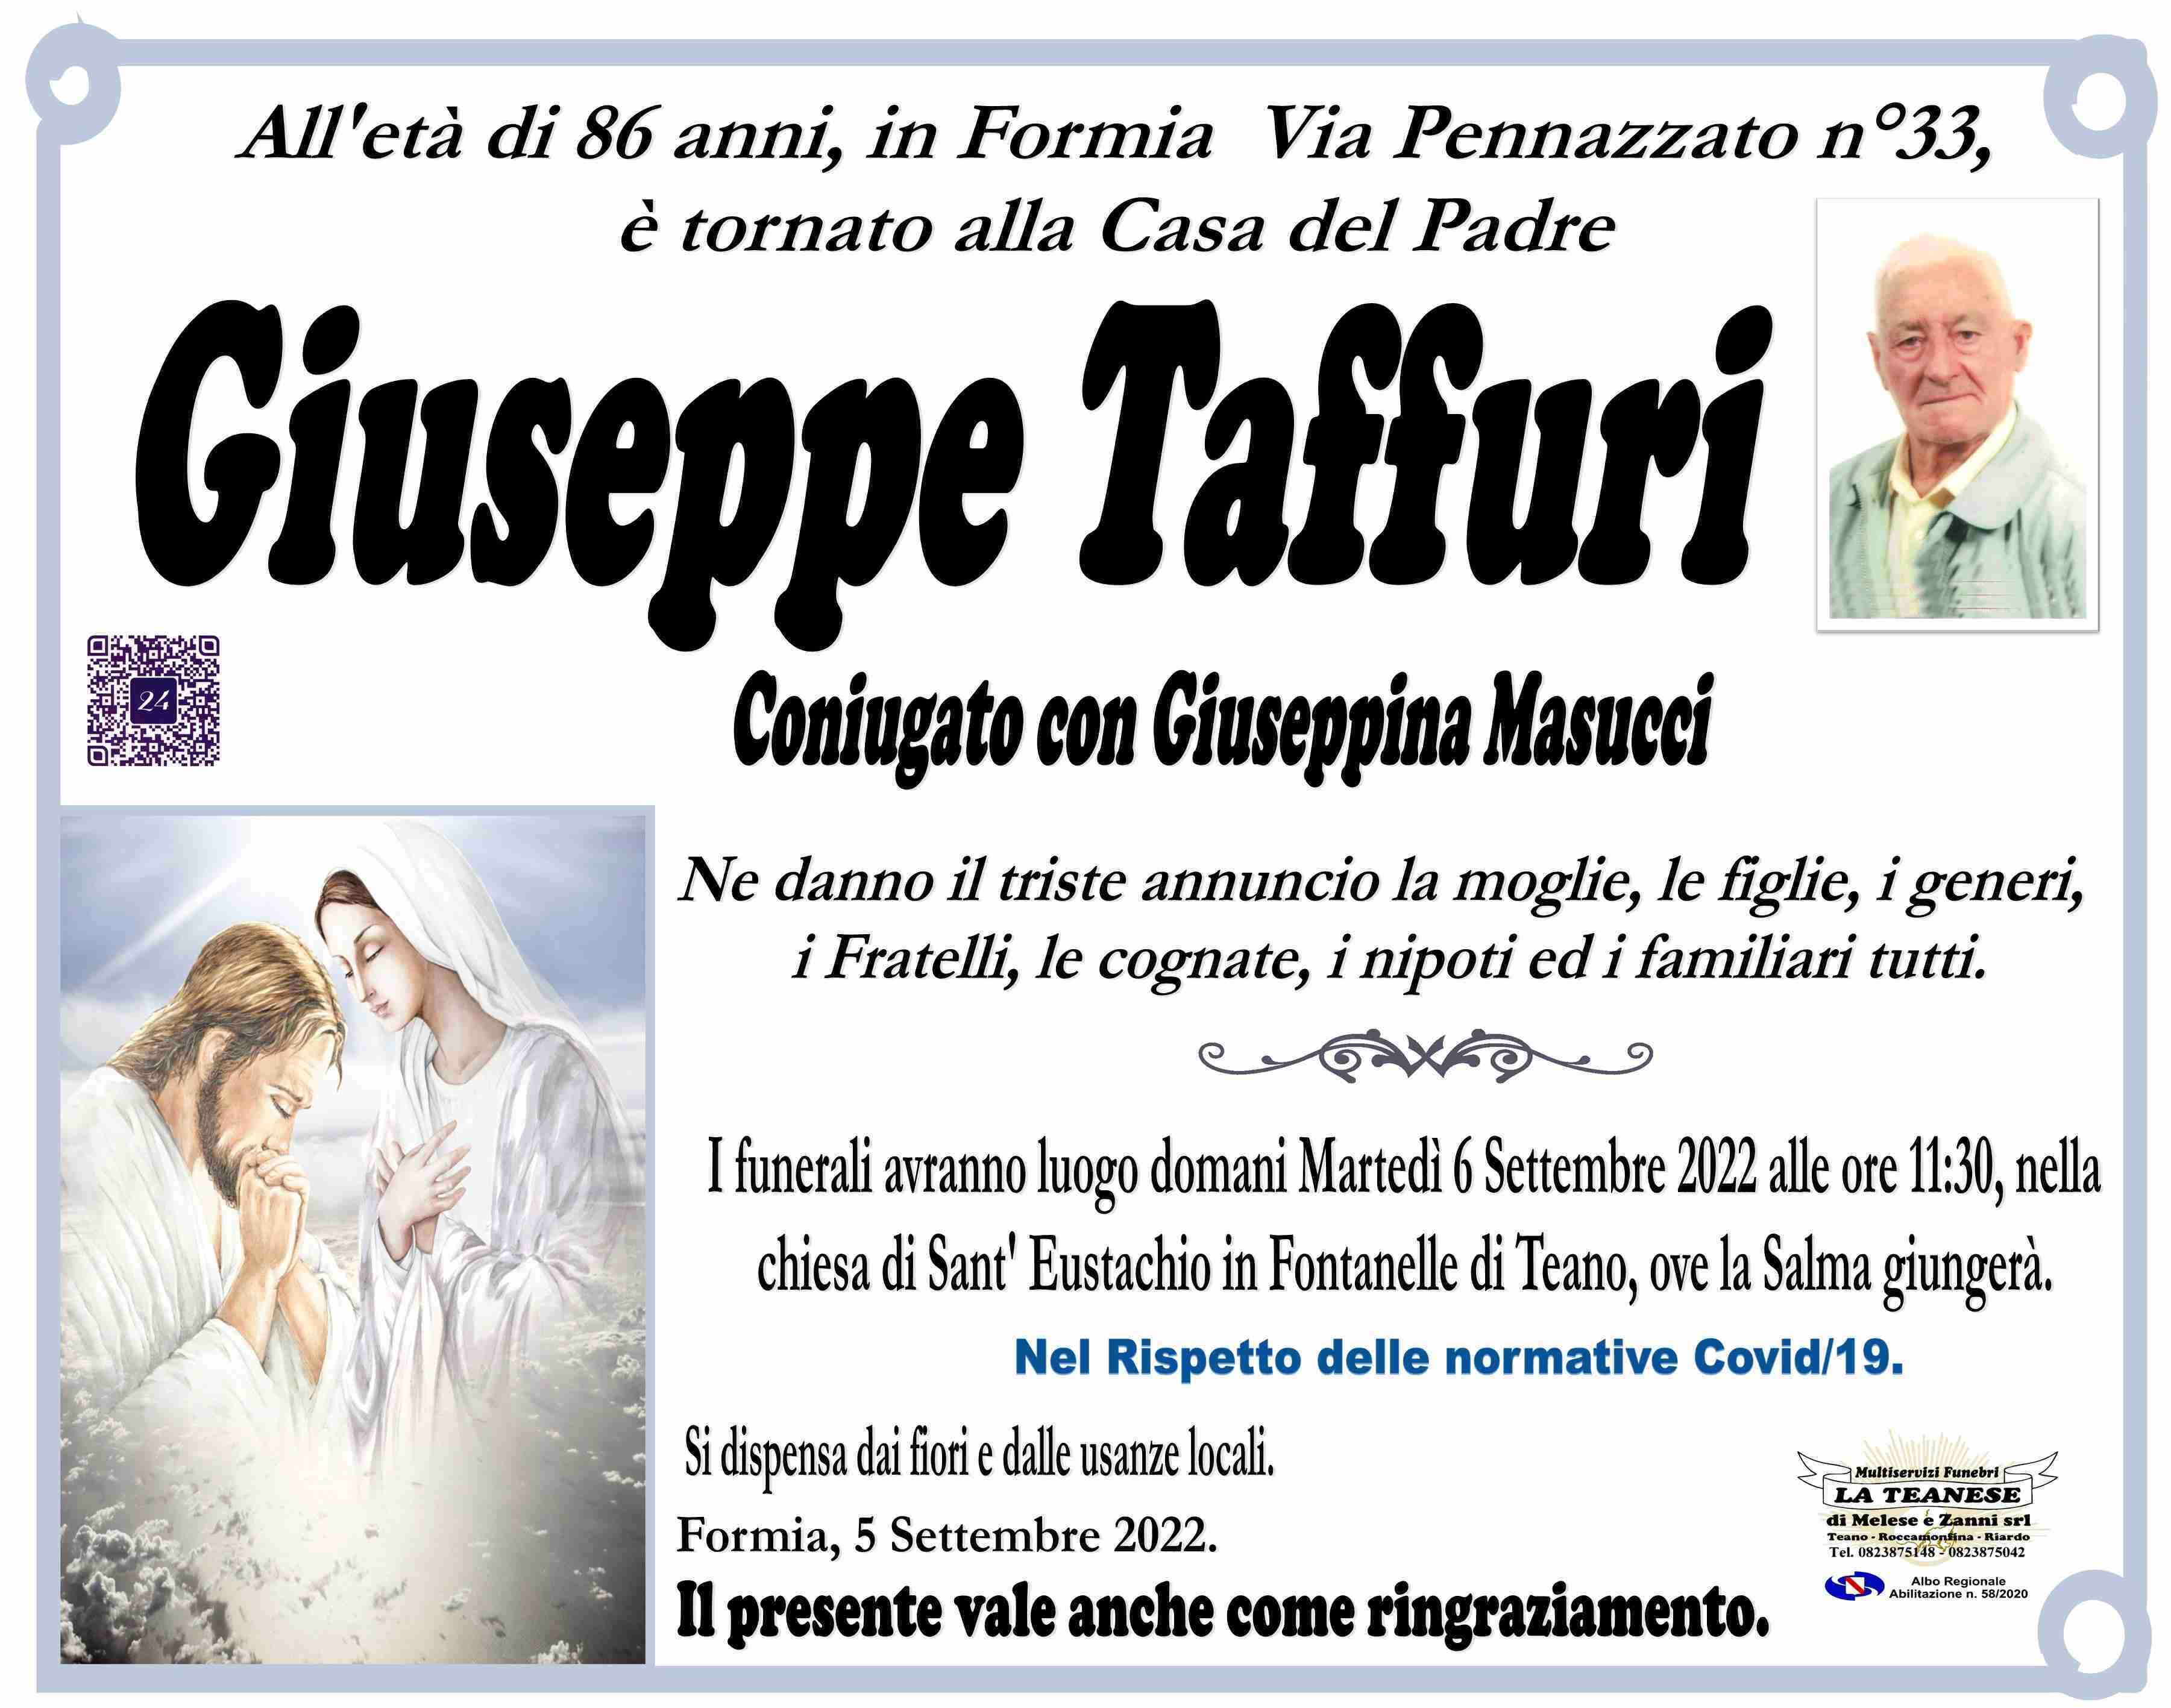 Giuseppe Taffuri